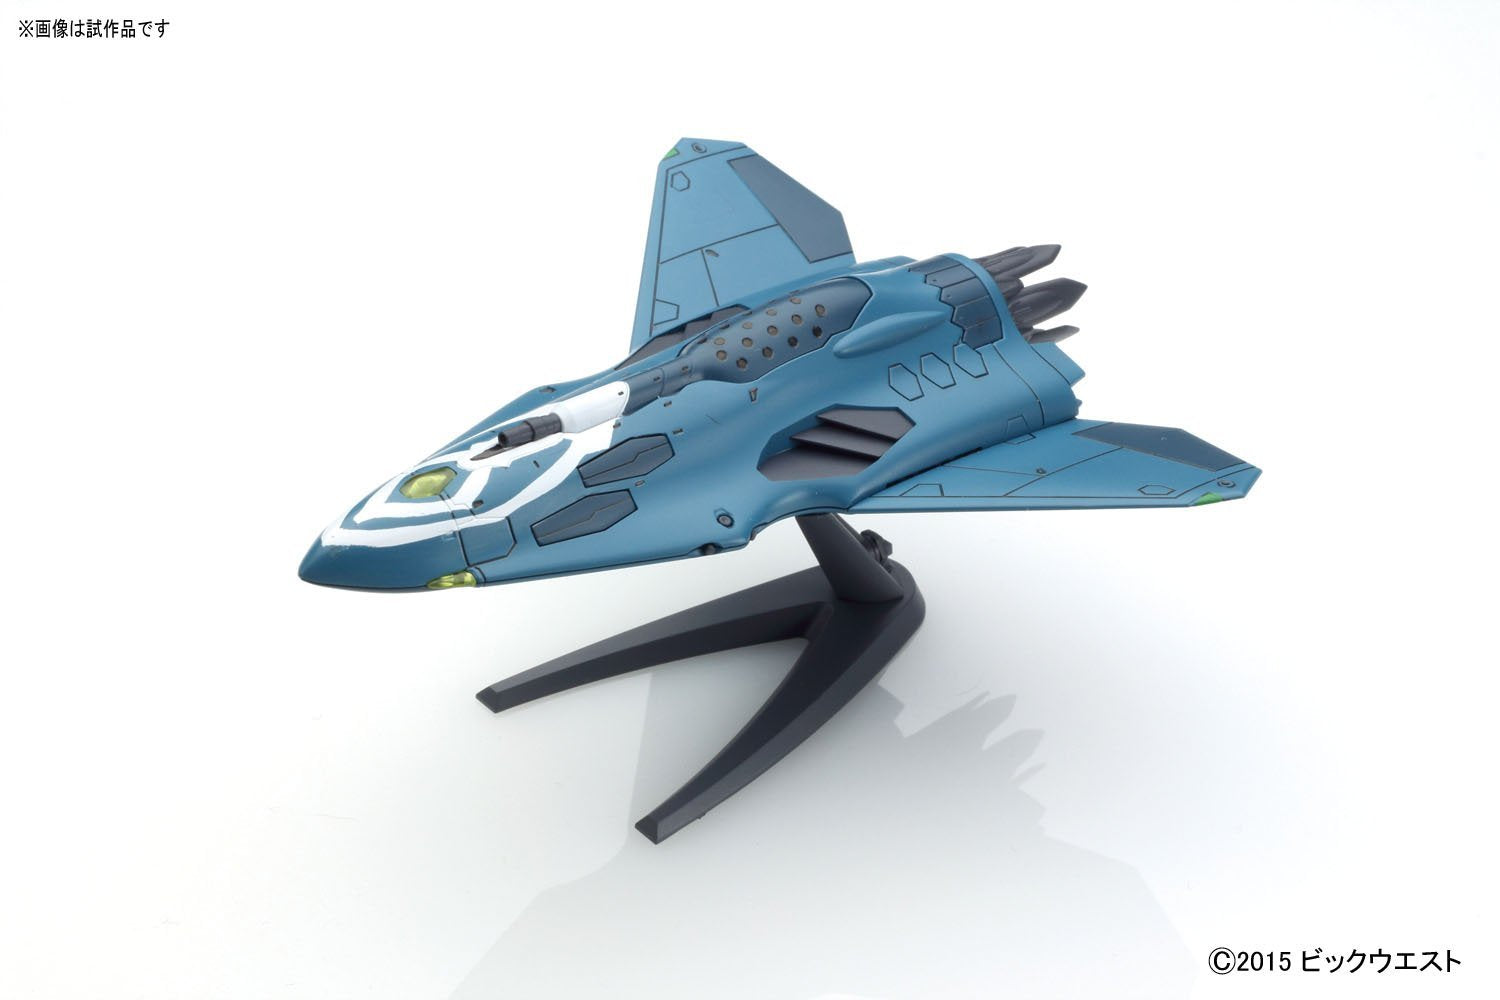 Lill Draken + Missile Pod for Sv-262Hs Draken III